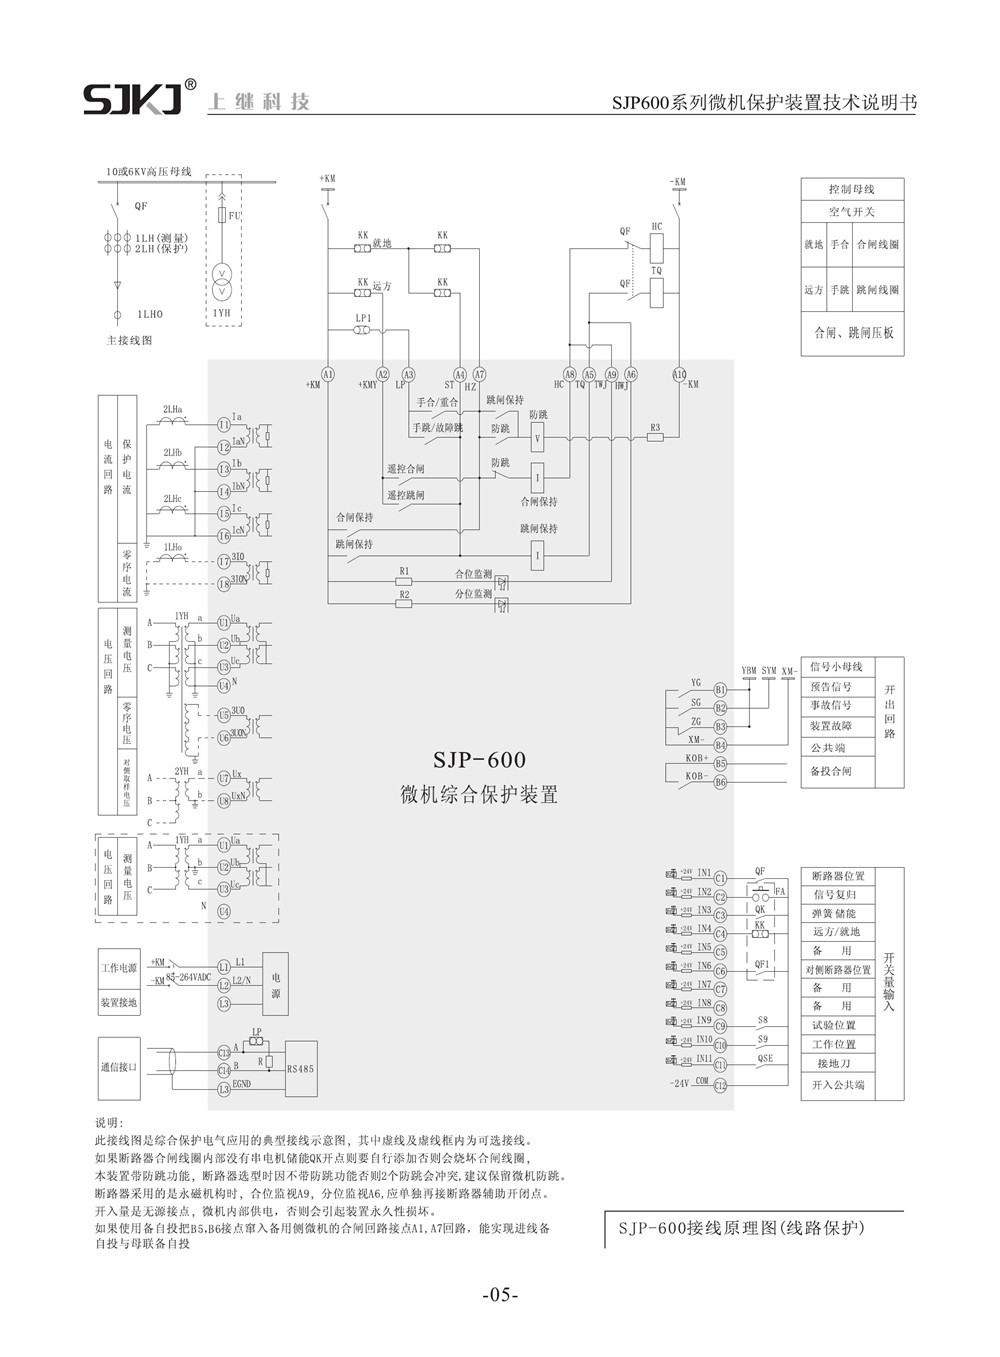 SJP-600微机综合保护装置产品参数图片二